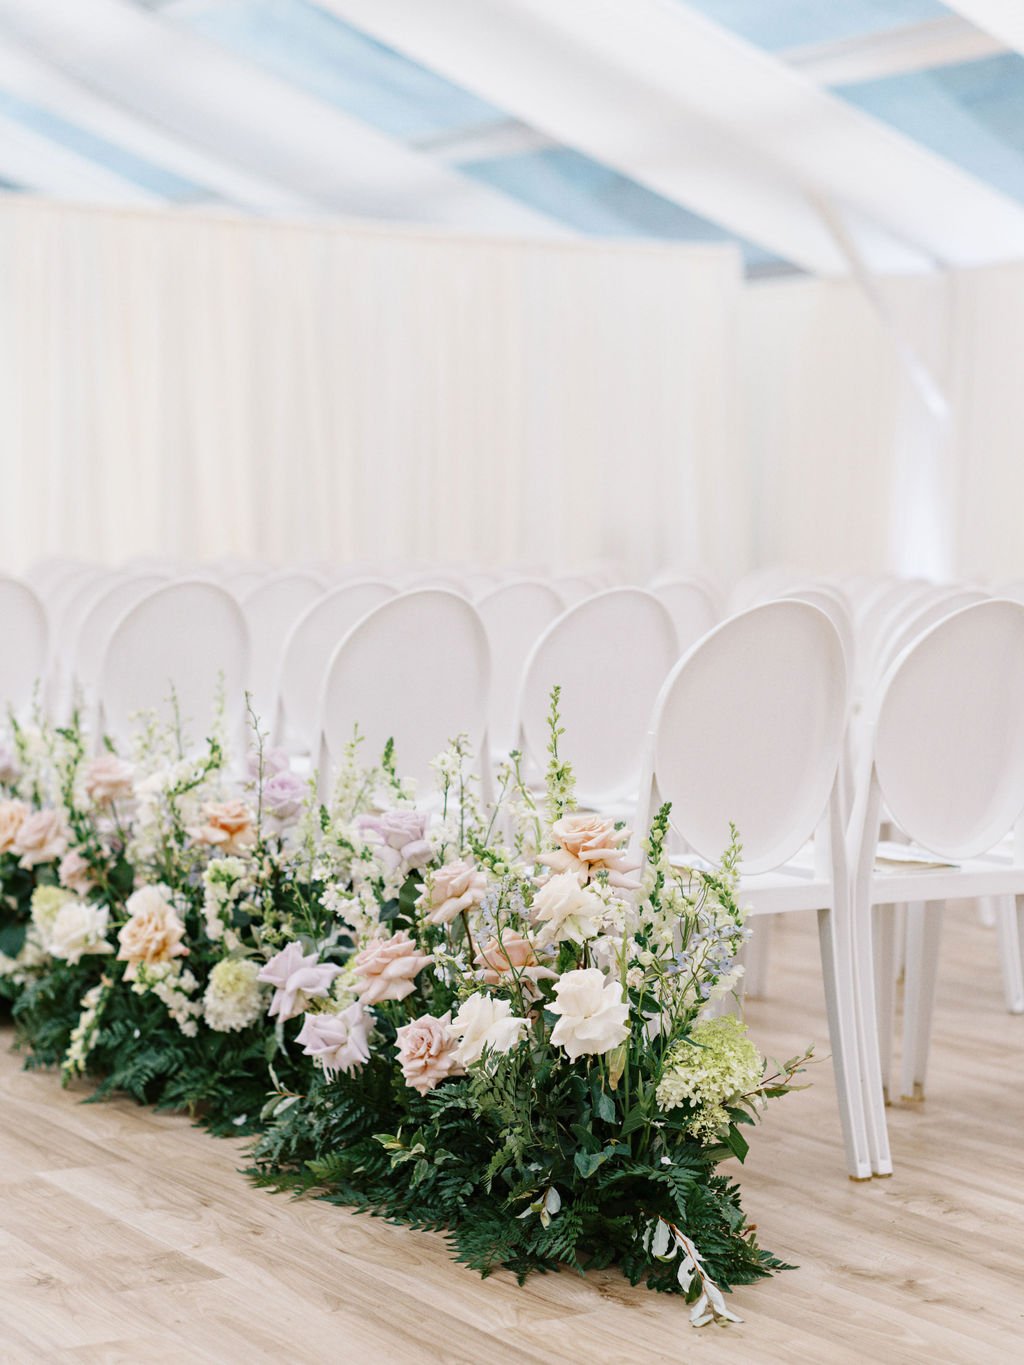 conradie-event-design-michigan-luxury-wedding-planning-design (70).JPG